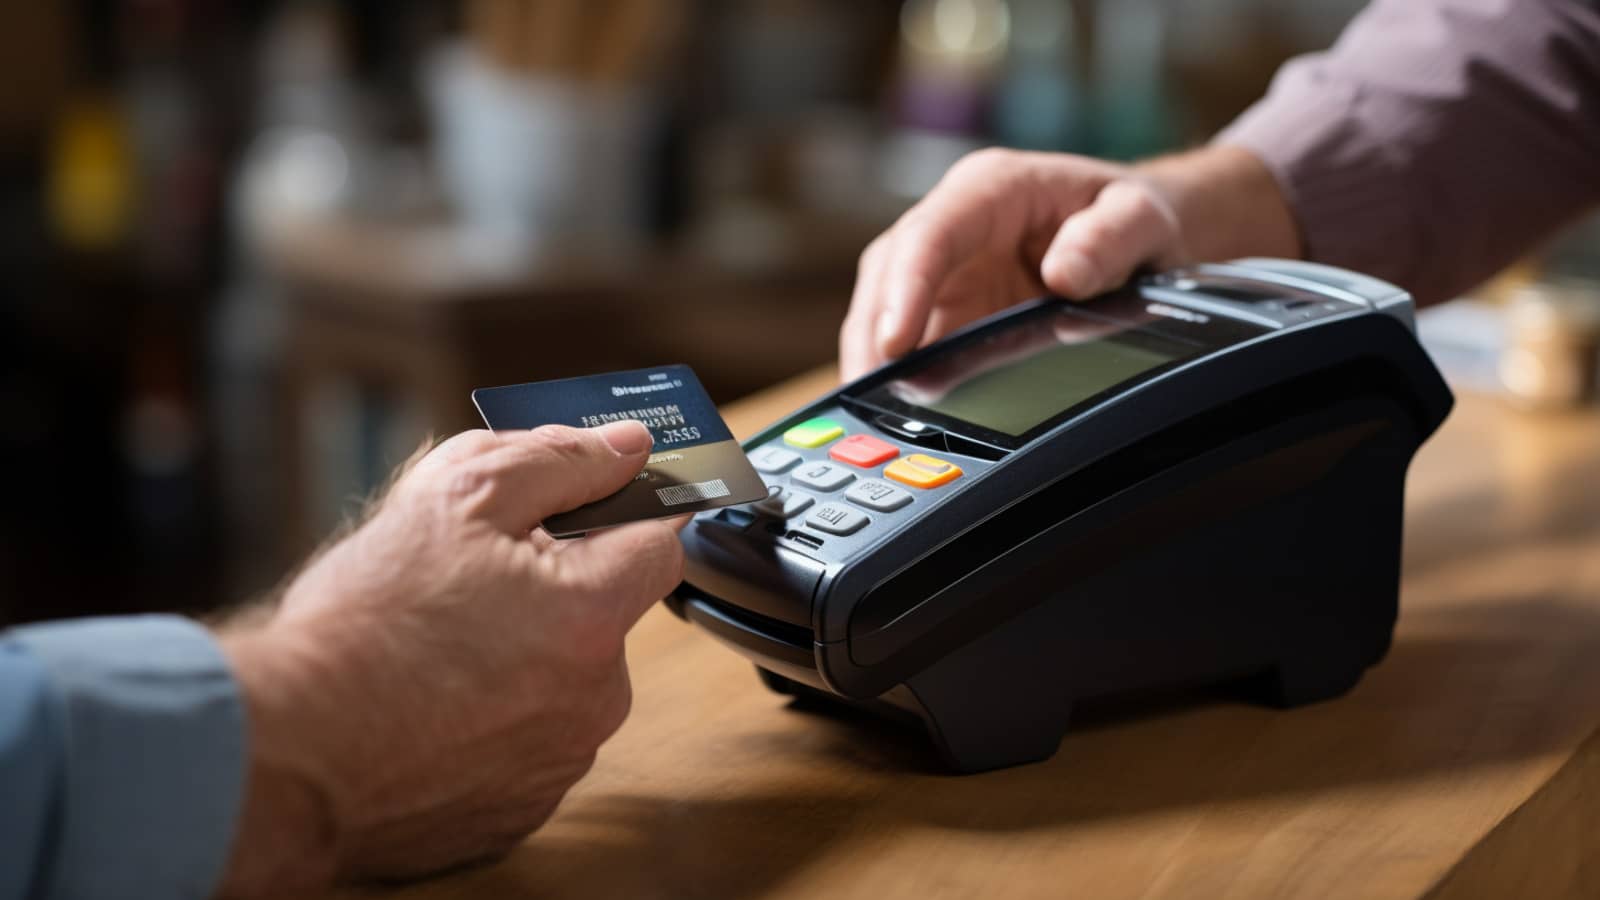 karta płatnicza przykładana do terminala płatniczego, płatność bezprzewodowa